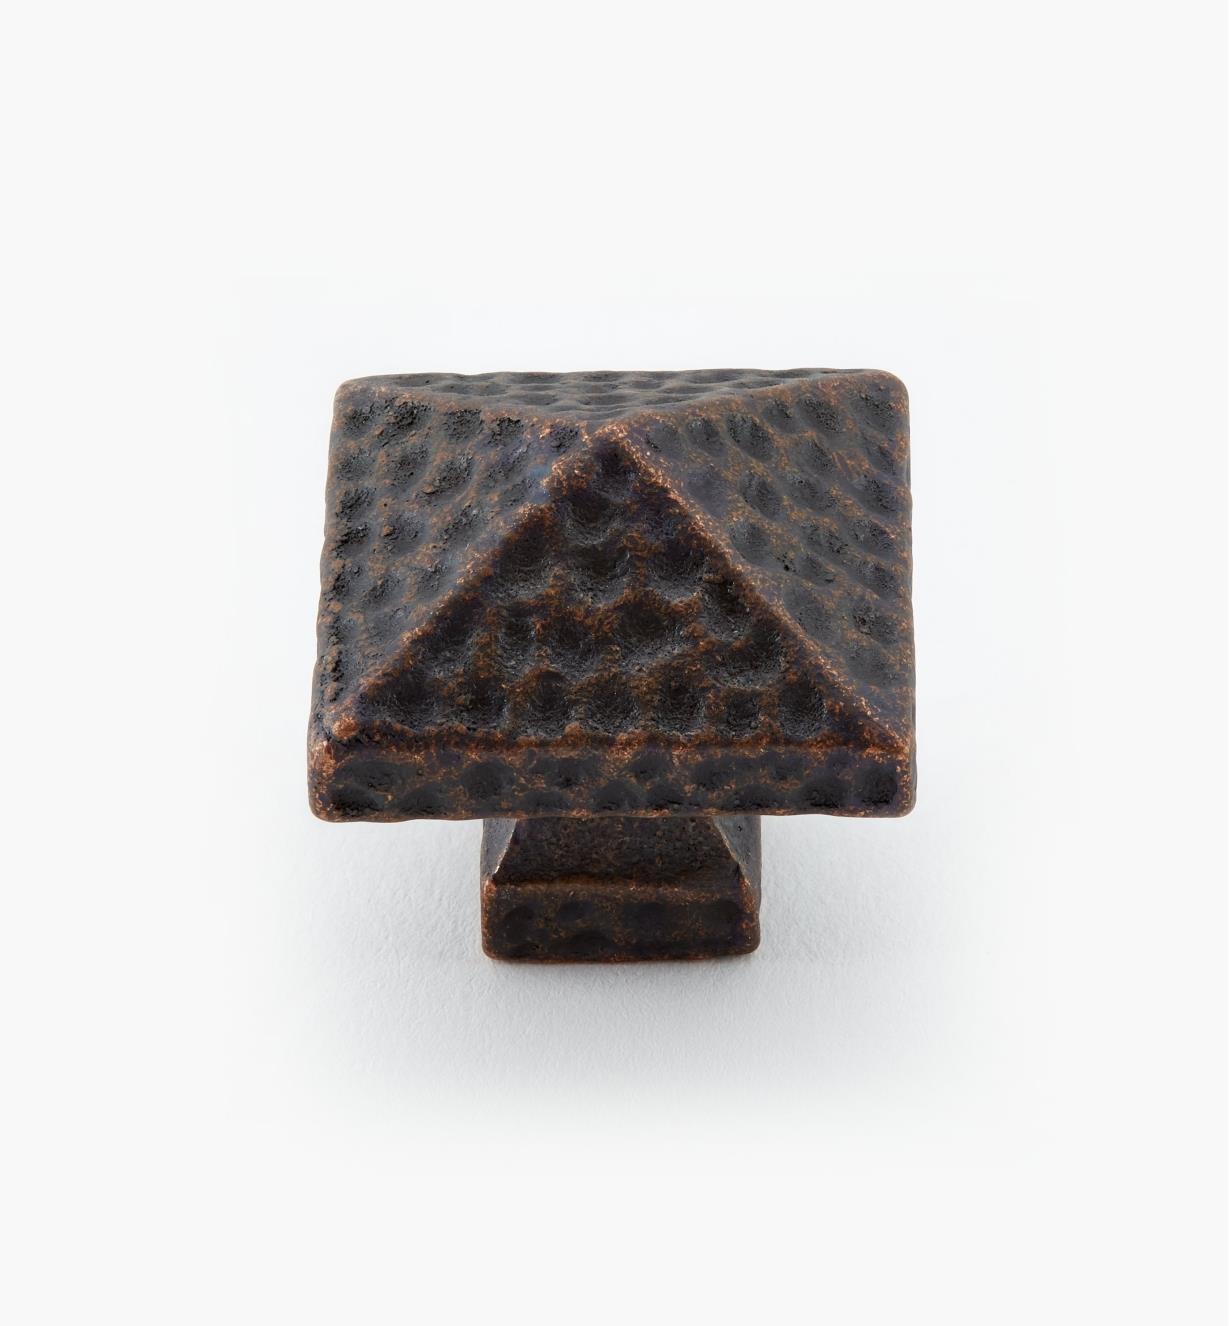 01H0310 - 1 1/4" Antique Bronze Square Knob